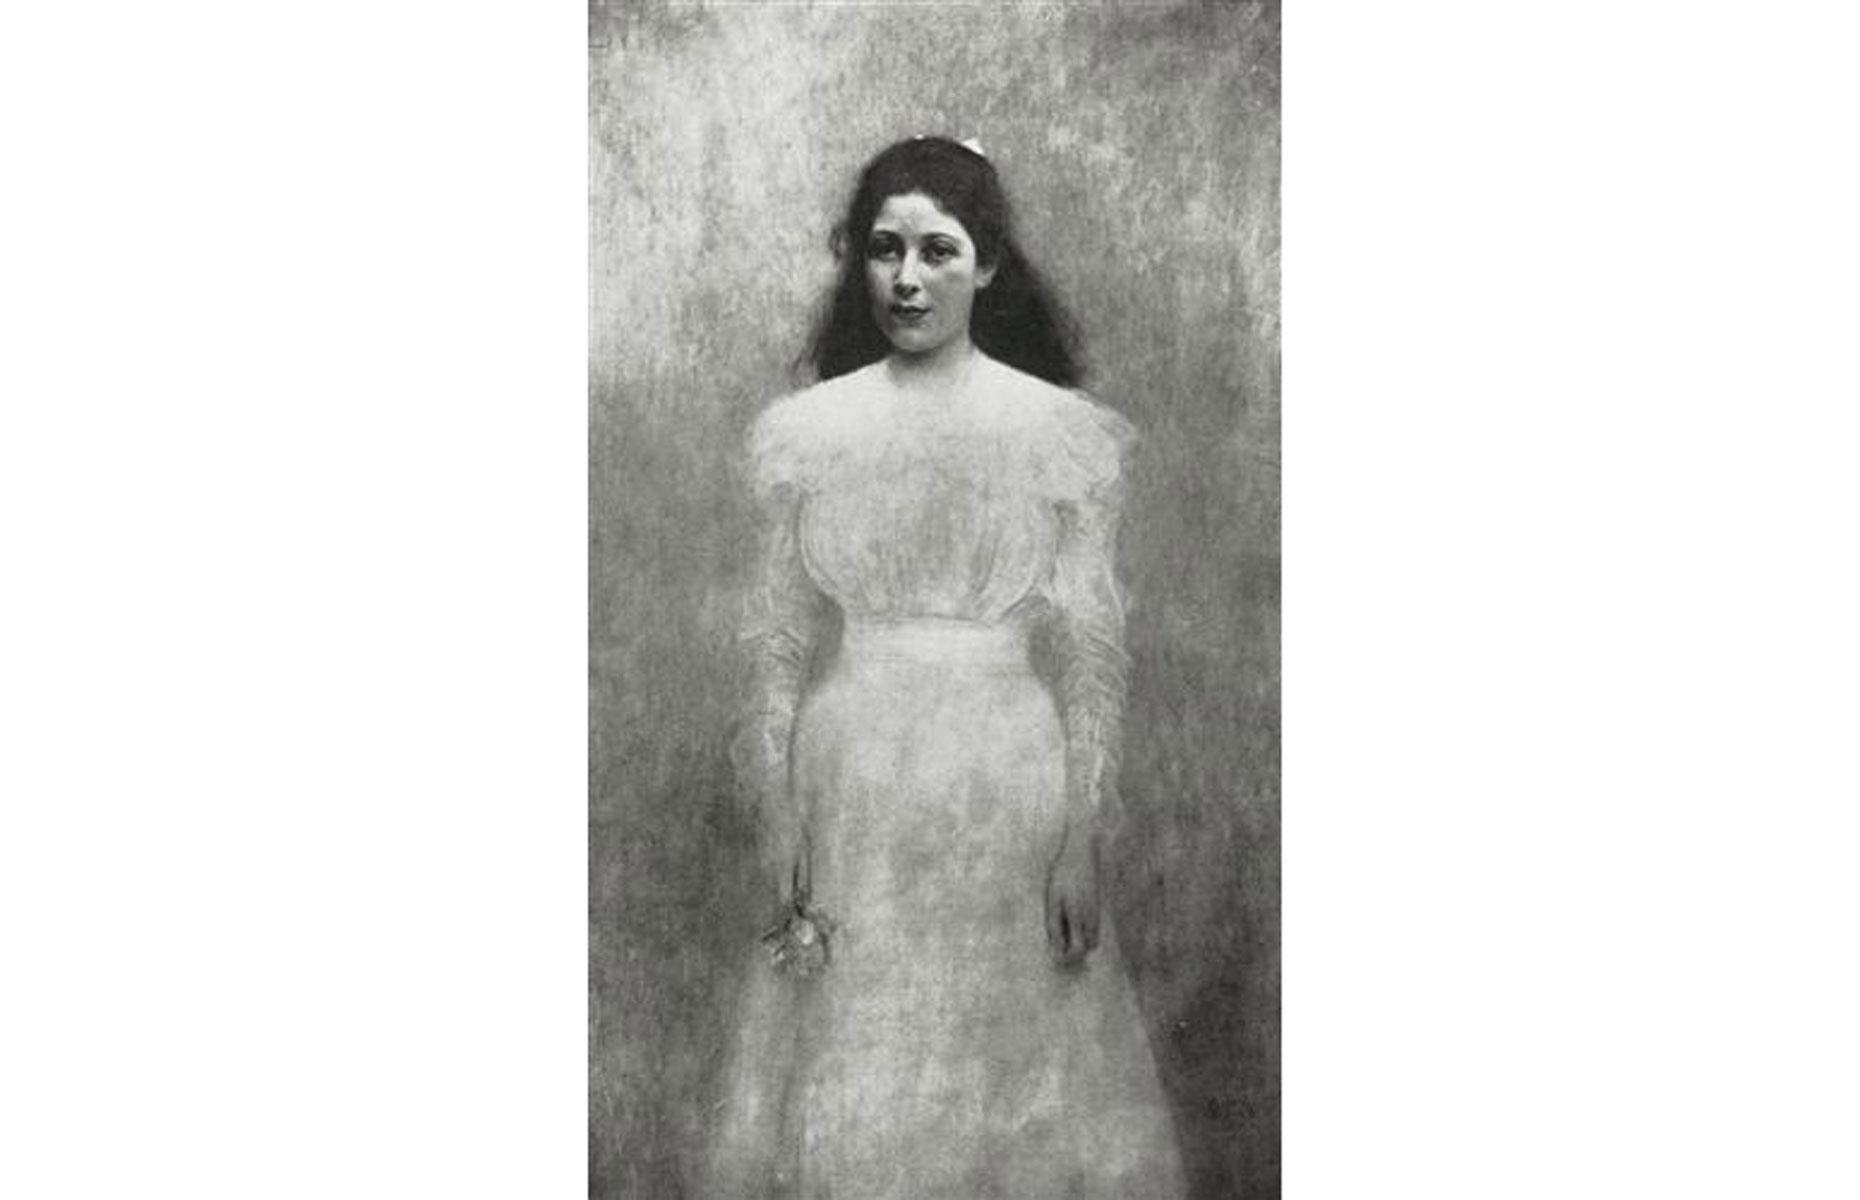 Gustav Klimt's Portrait of Trude Steiner